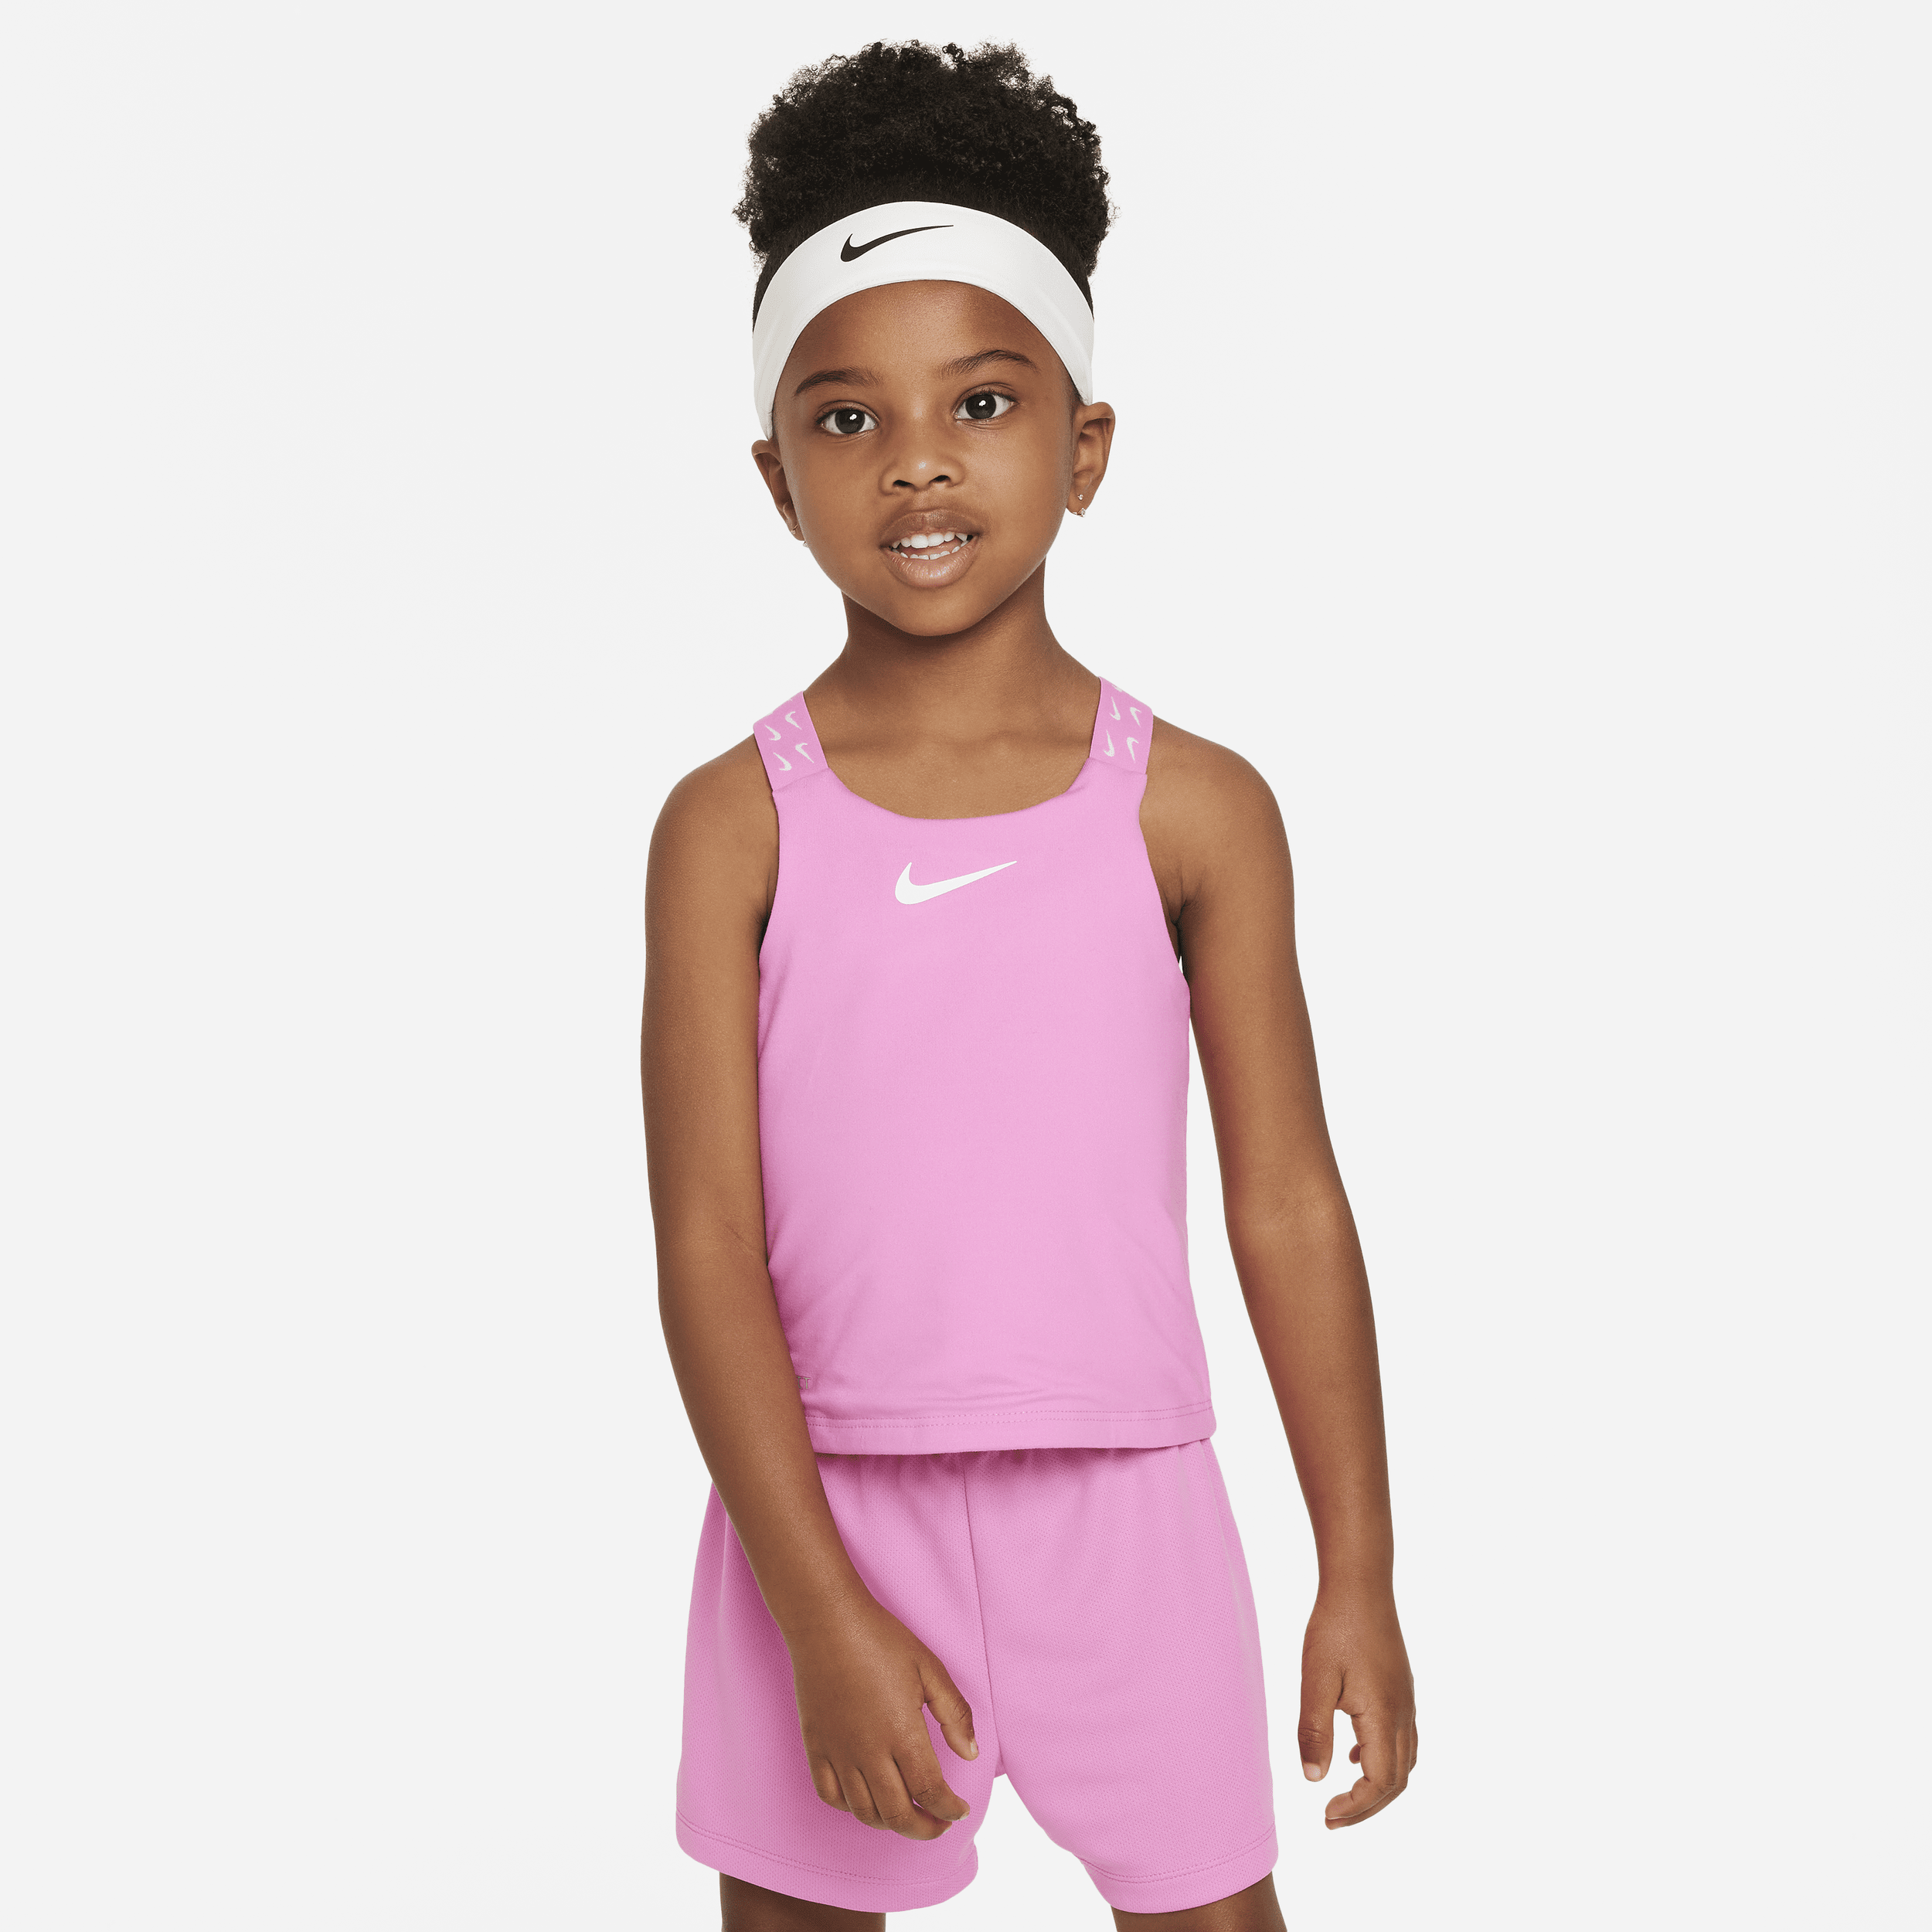 Nike Babies' Dri-fit Toddler Tank Top In Pink